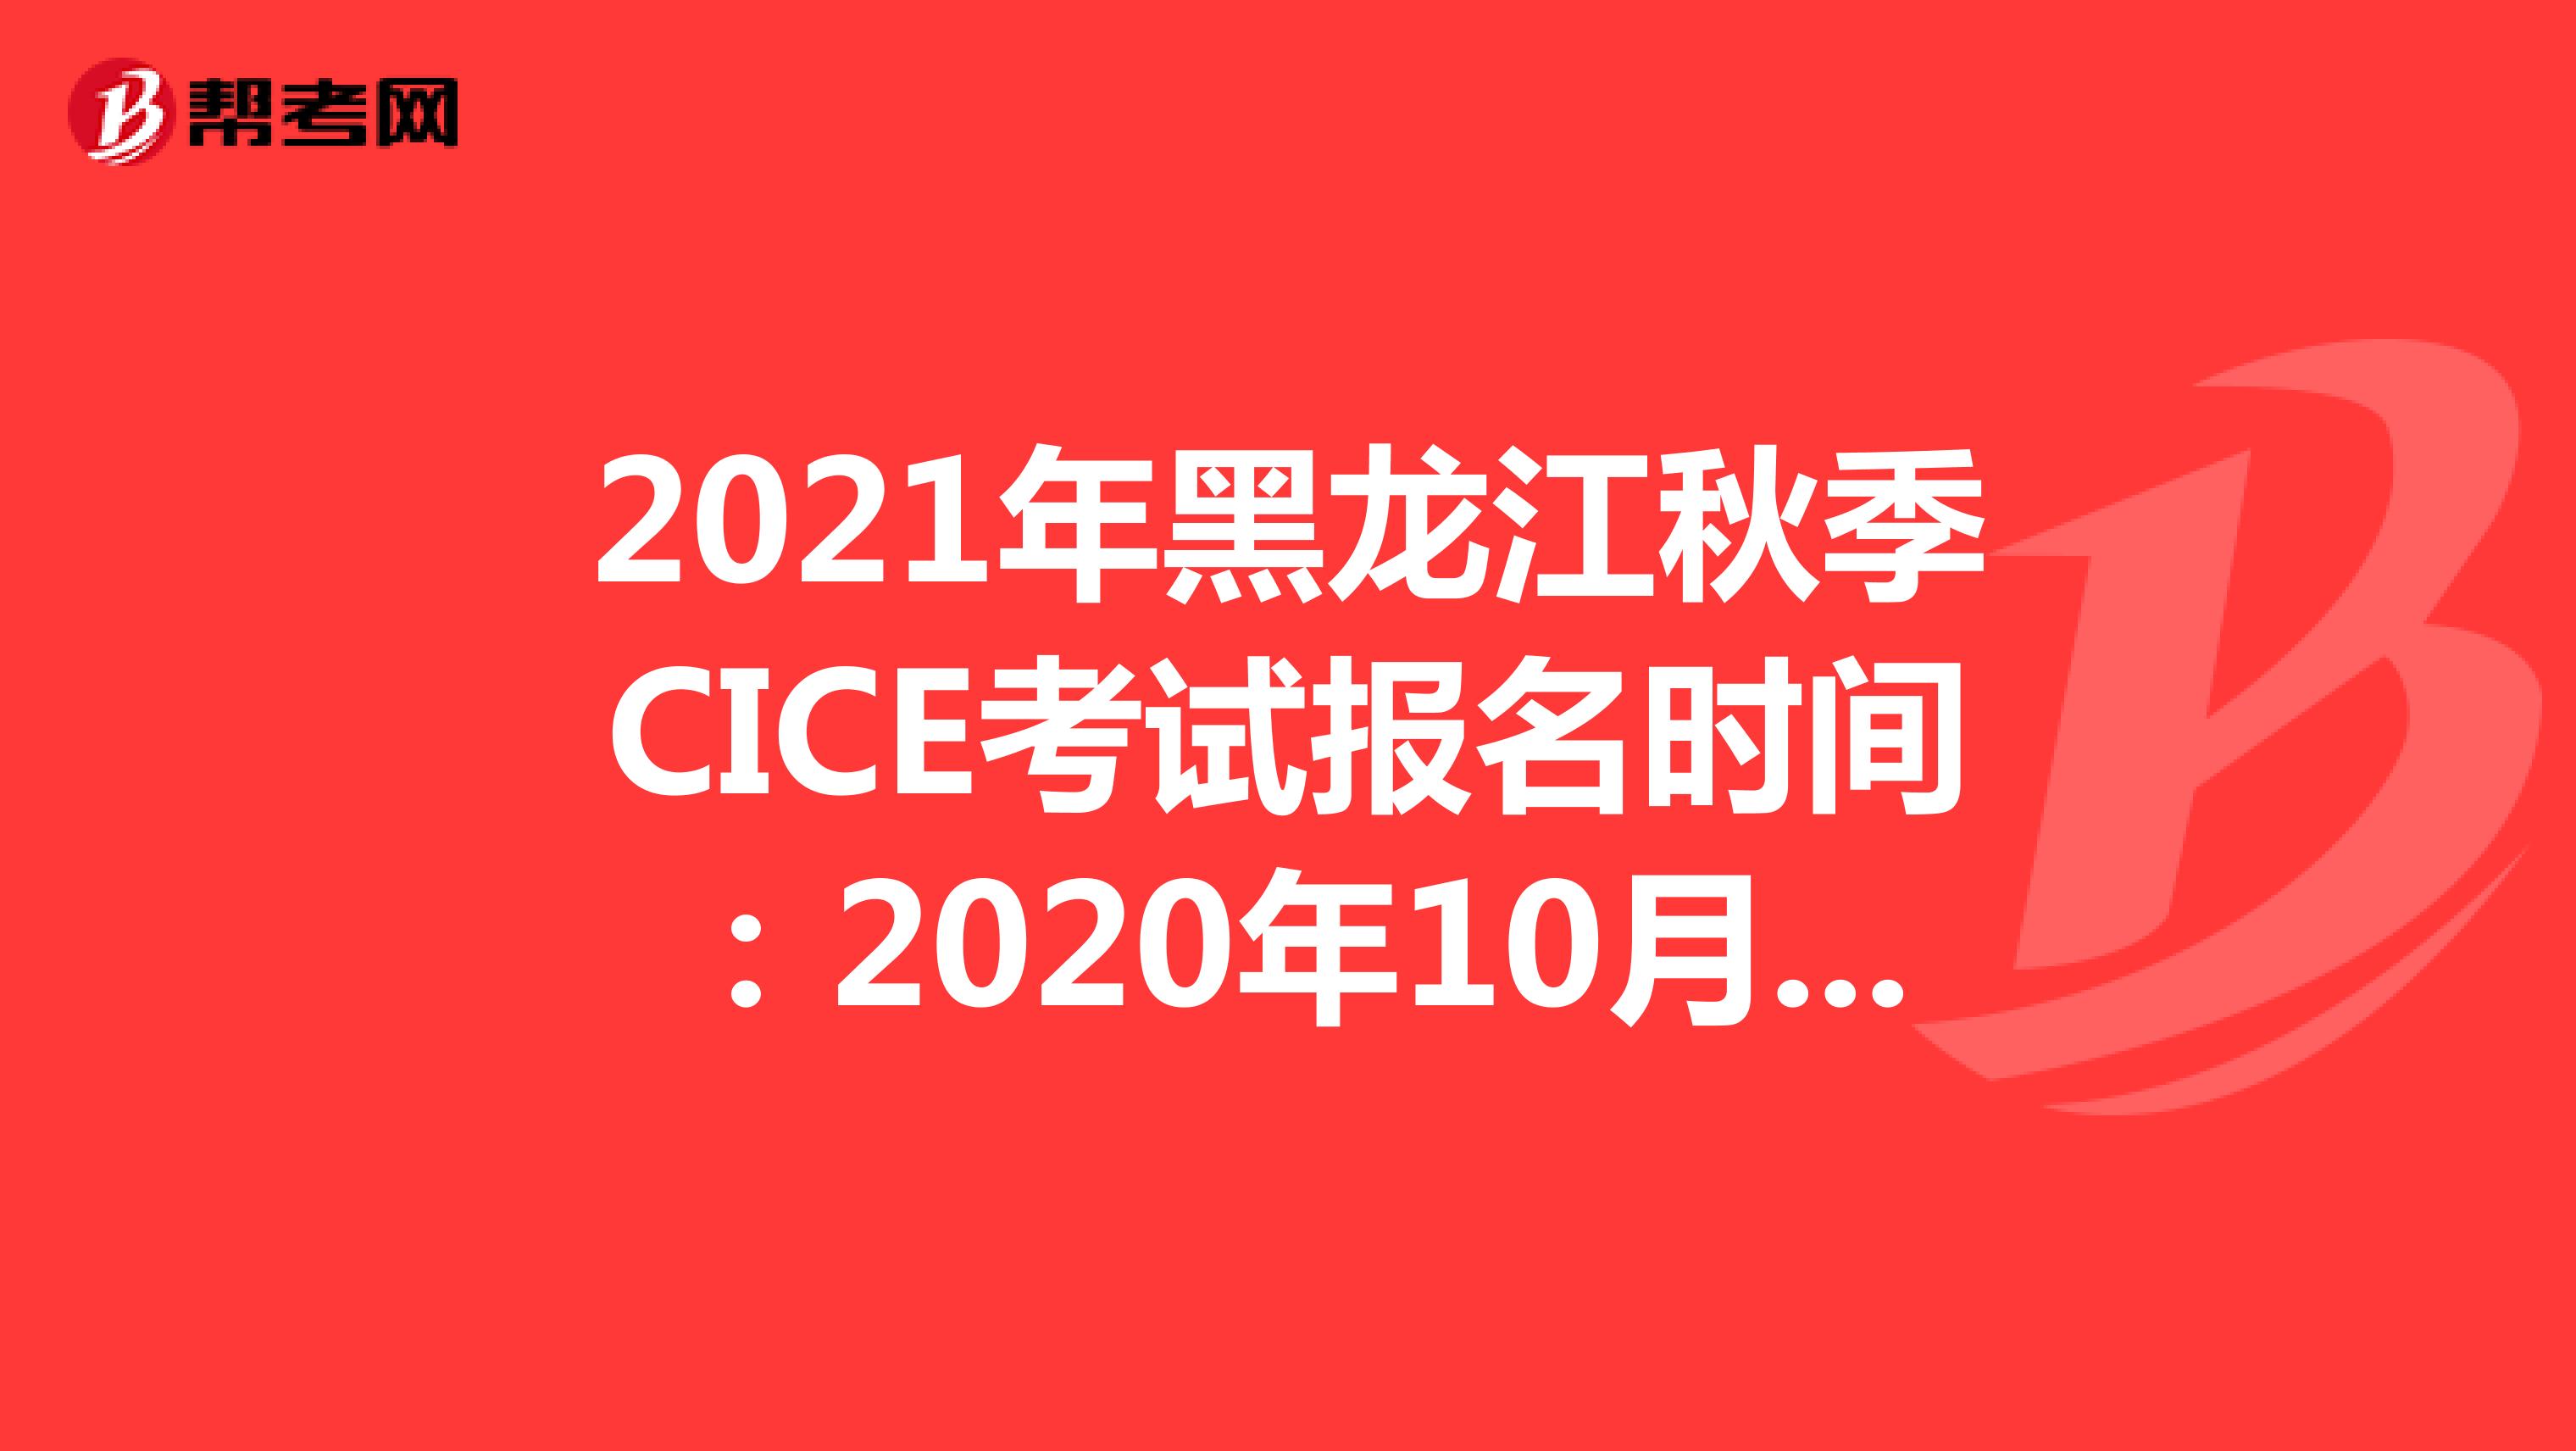 2021年黑龙江秋季CICE考试报名时间：2020年10月19日-2021年8月31日